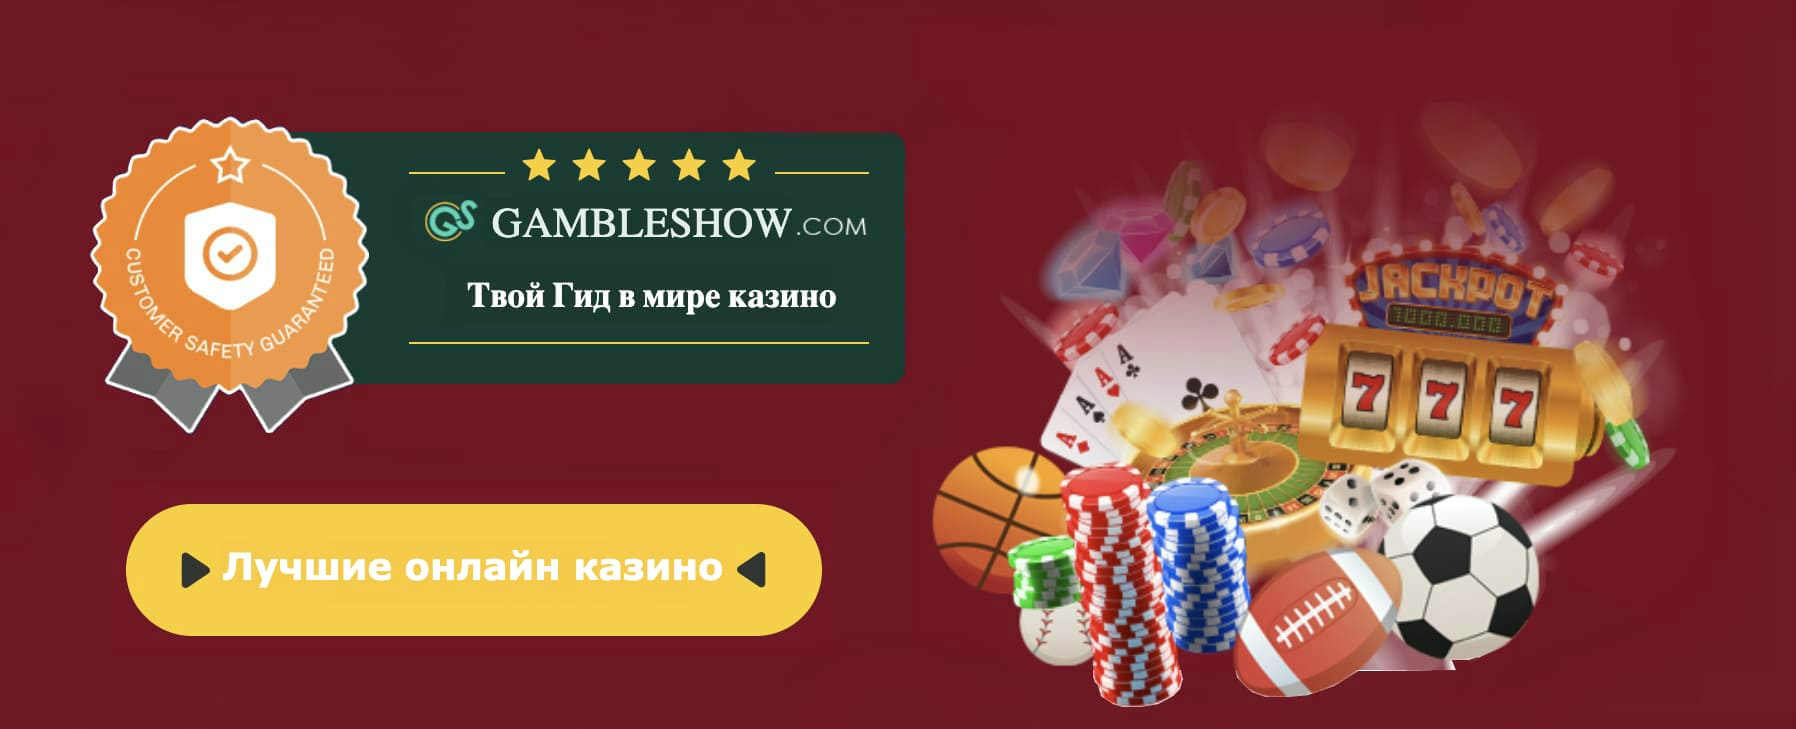 Melhor bónus de casino bitcoin online sem requisitos de apostas